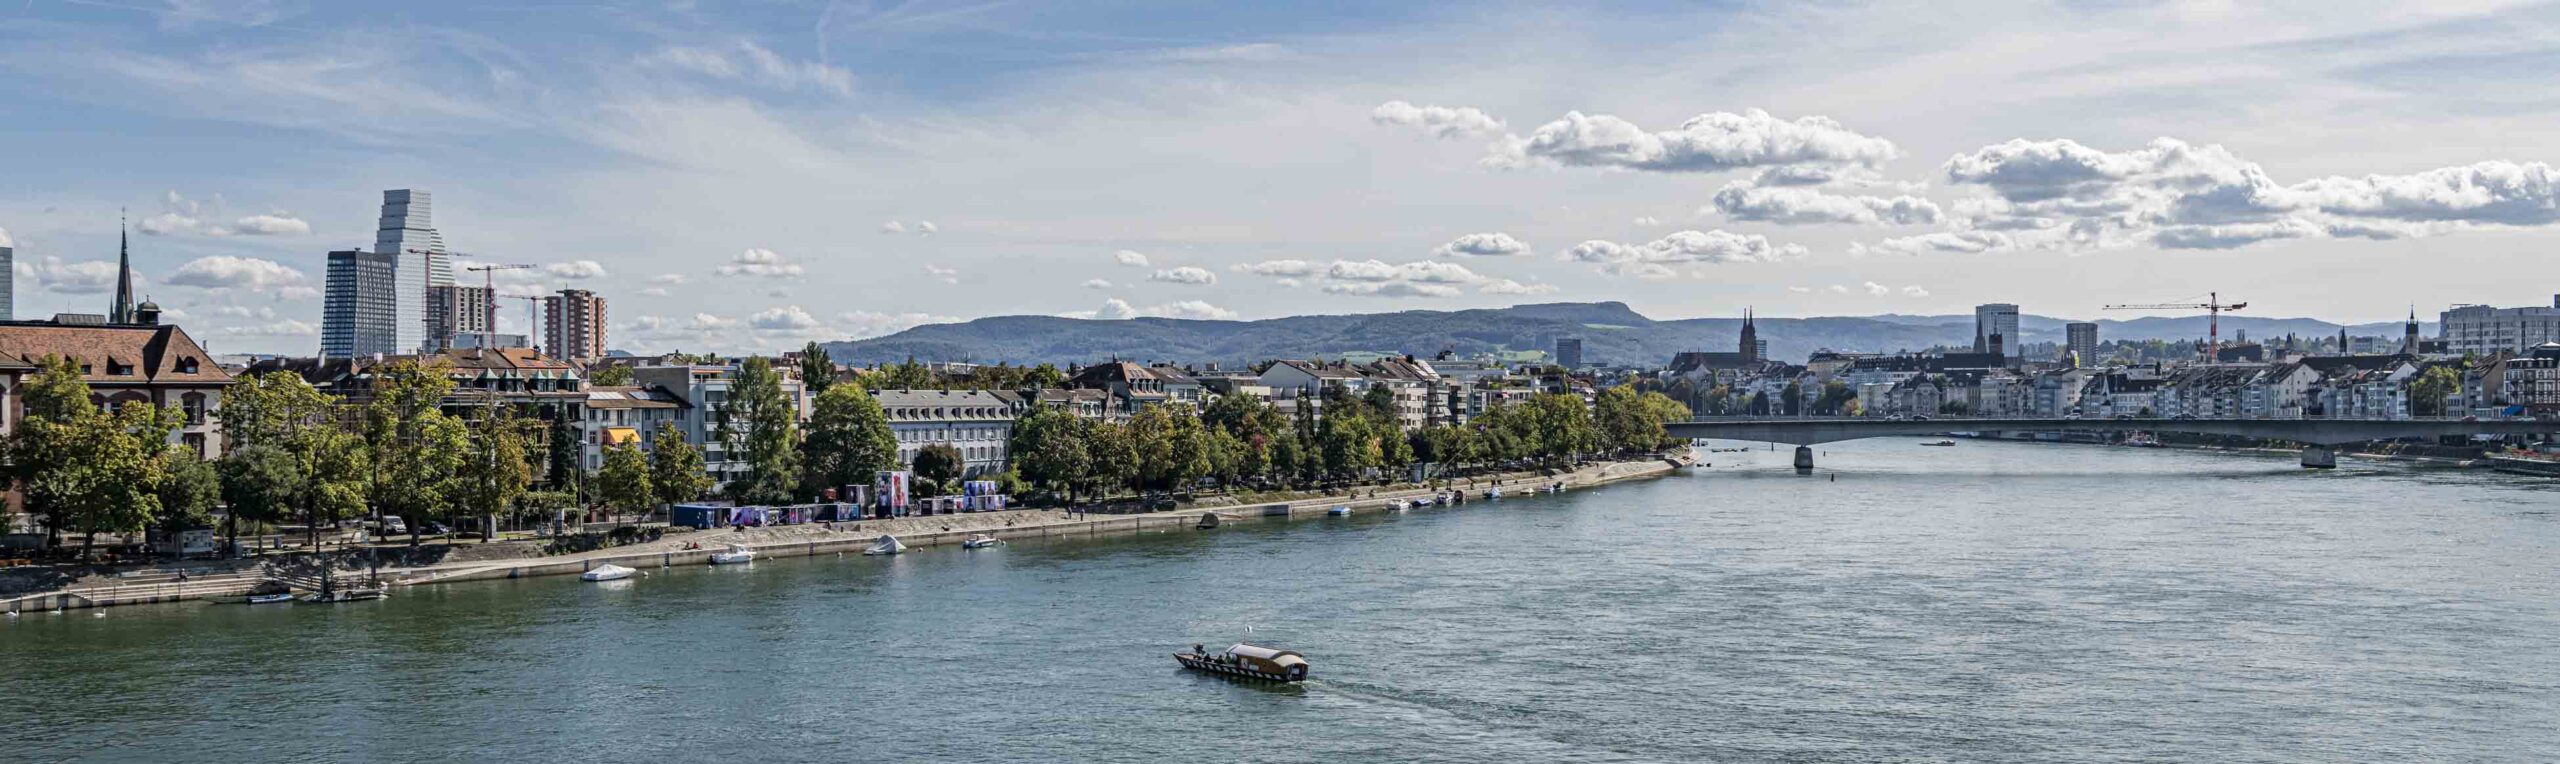 Blick auf den Rhein und das Kleinbasel